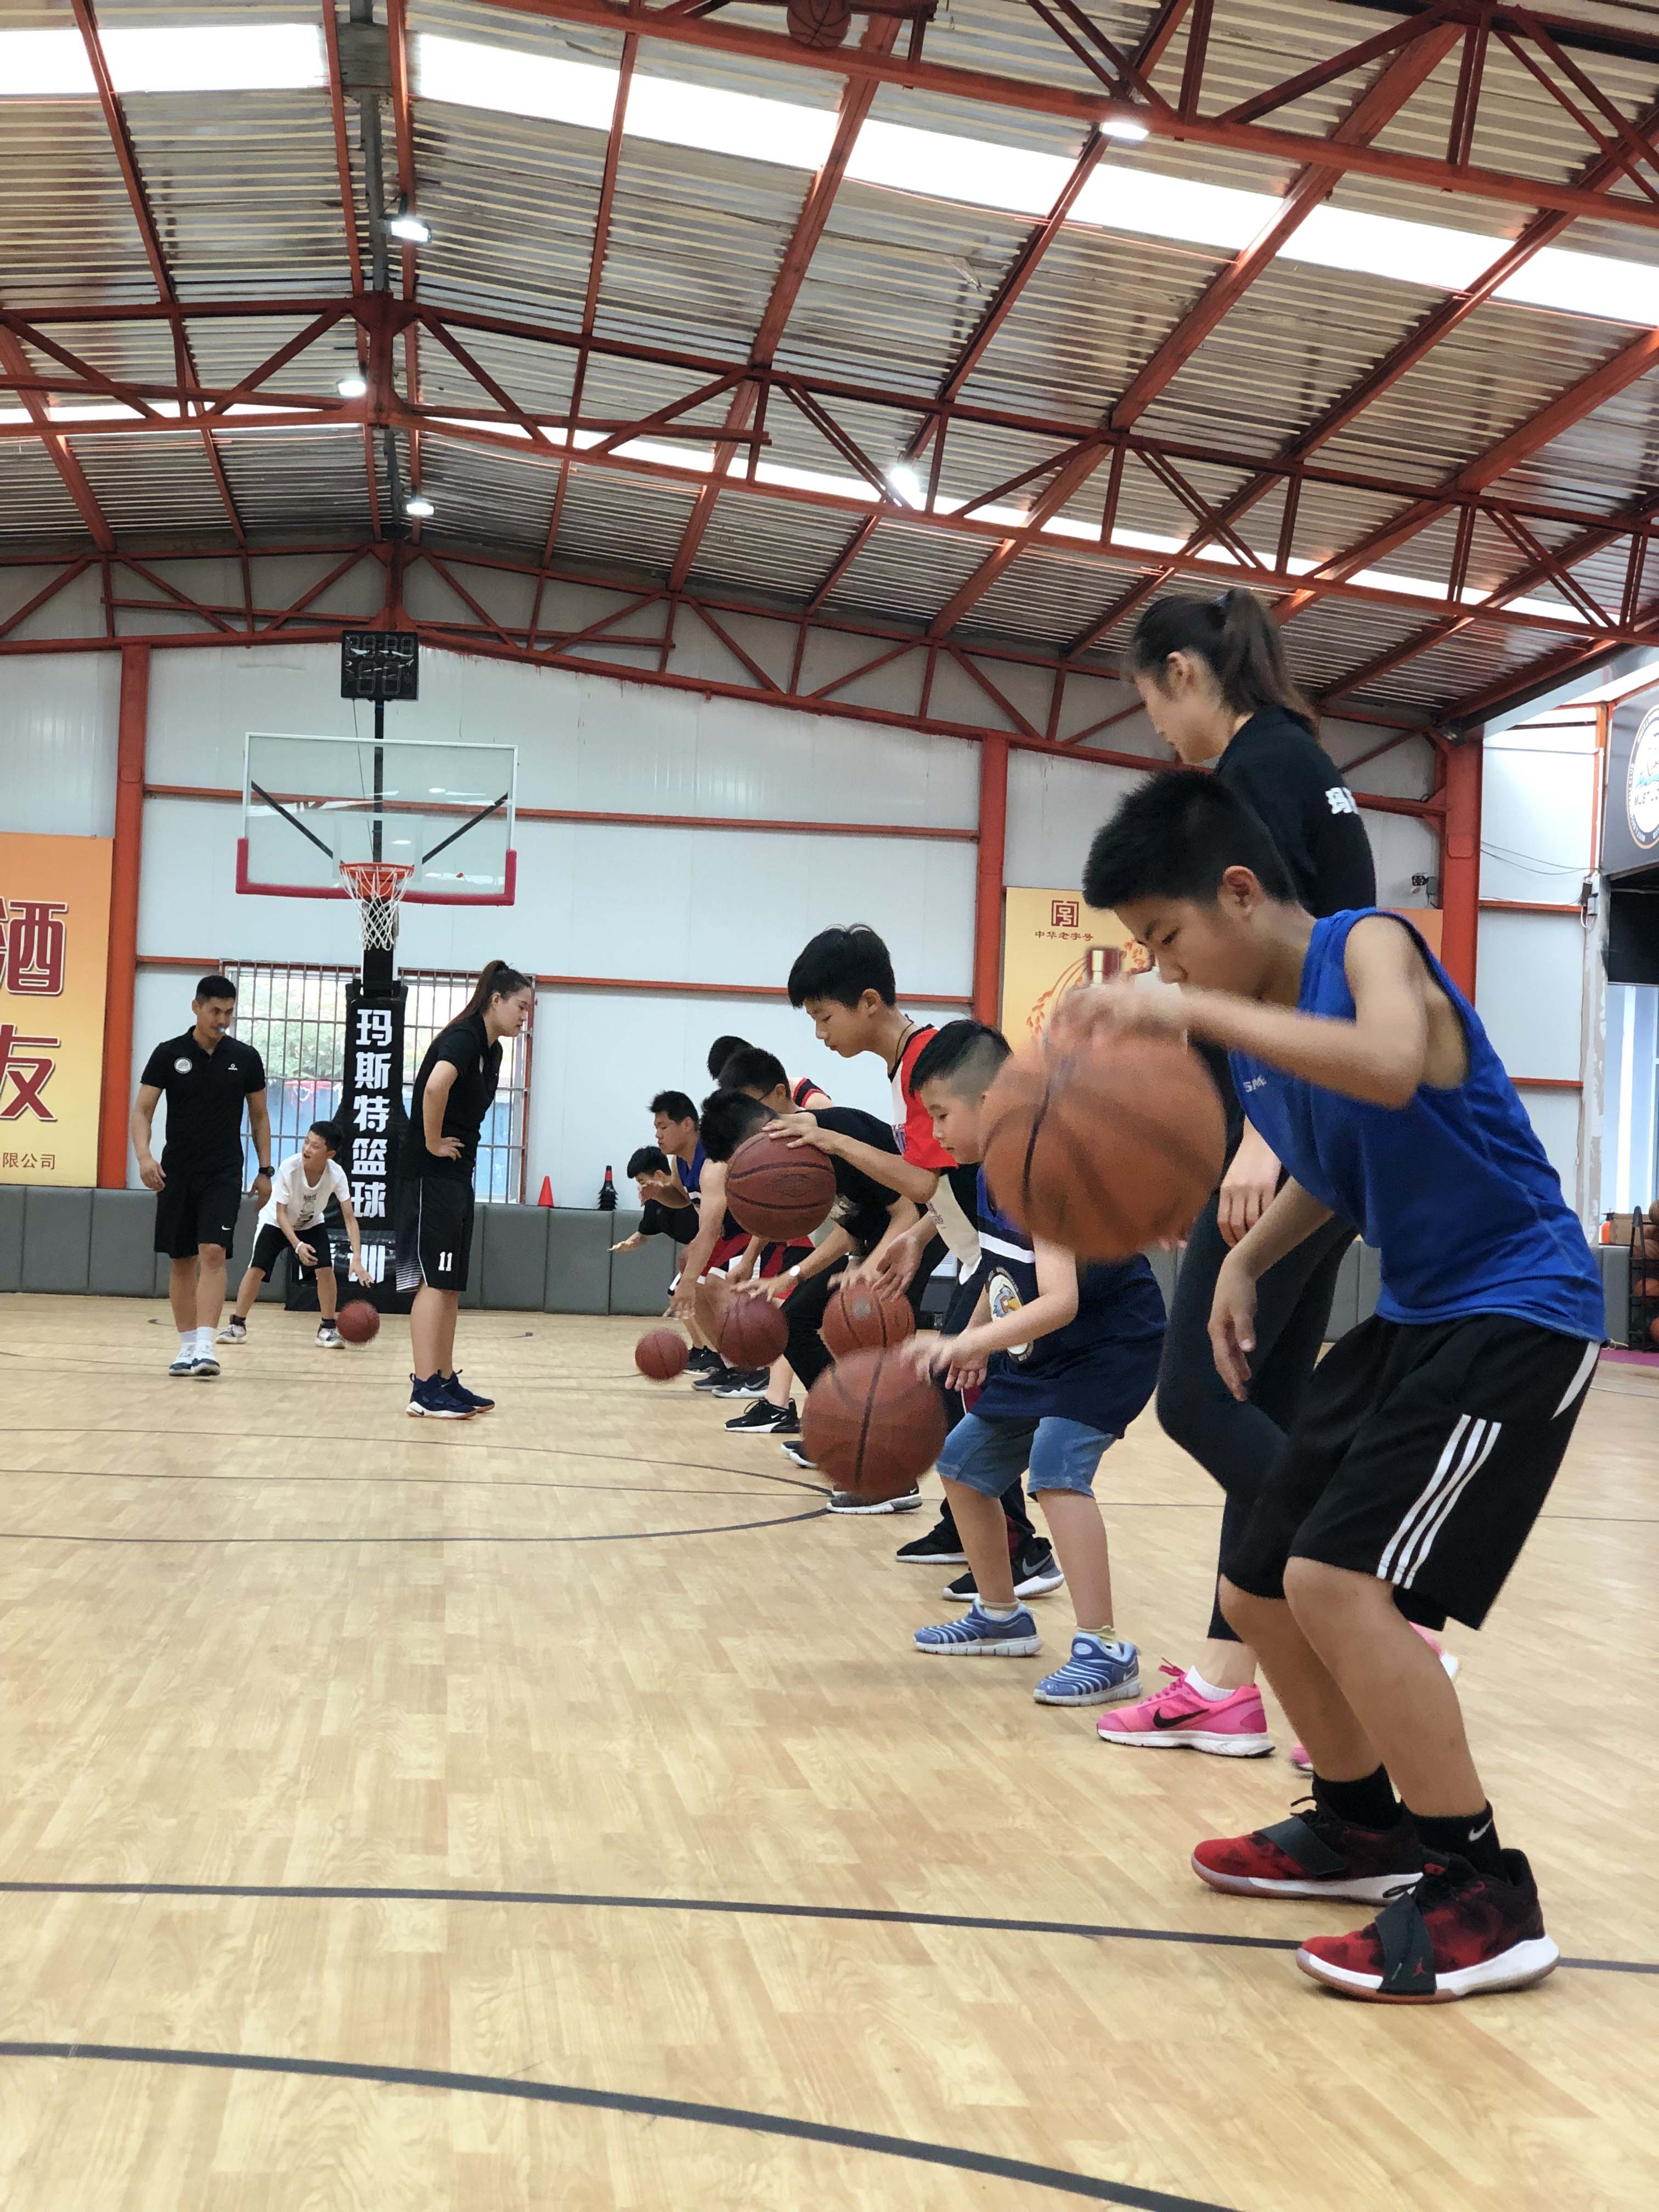 临沂正规儿童篮球教学机构 山东篮艺体育供应